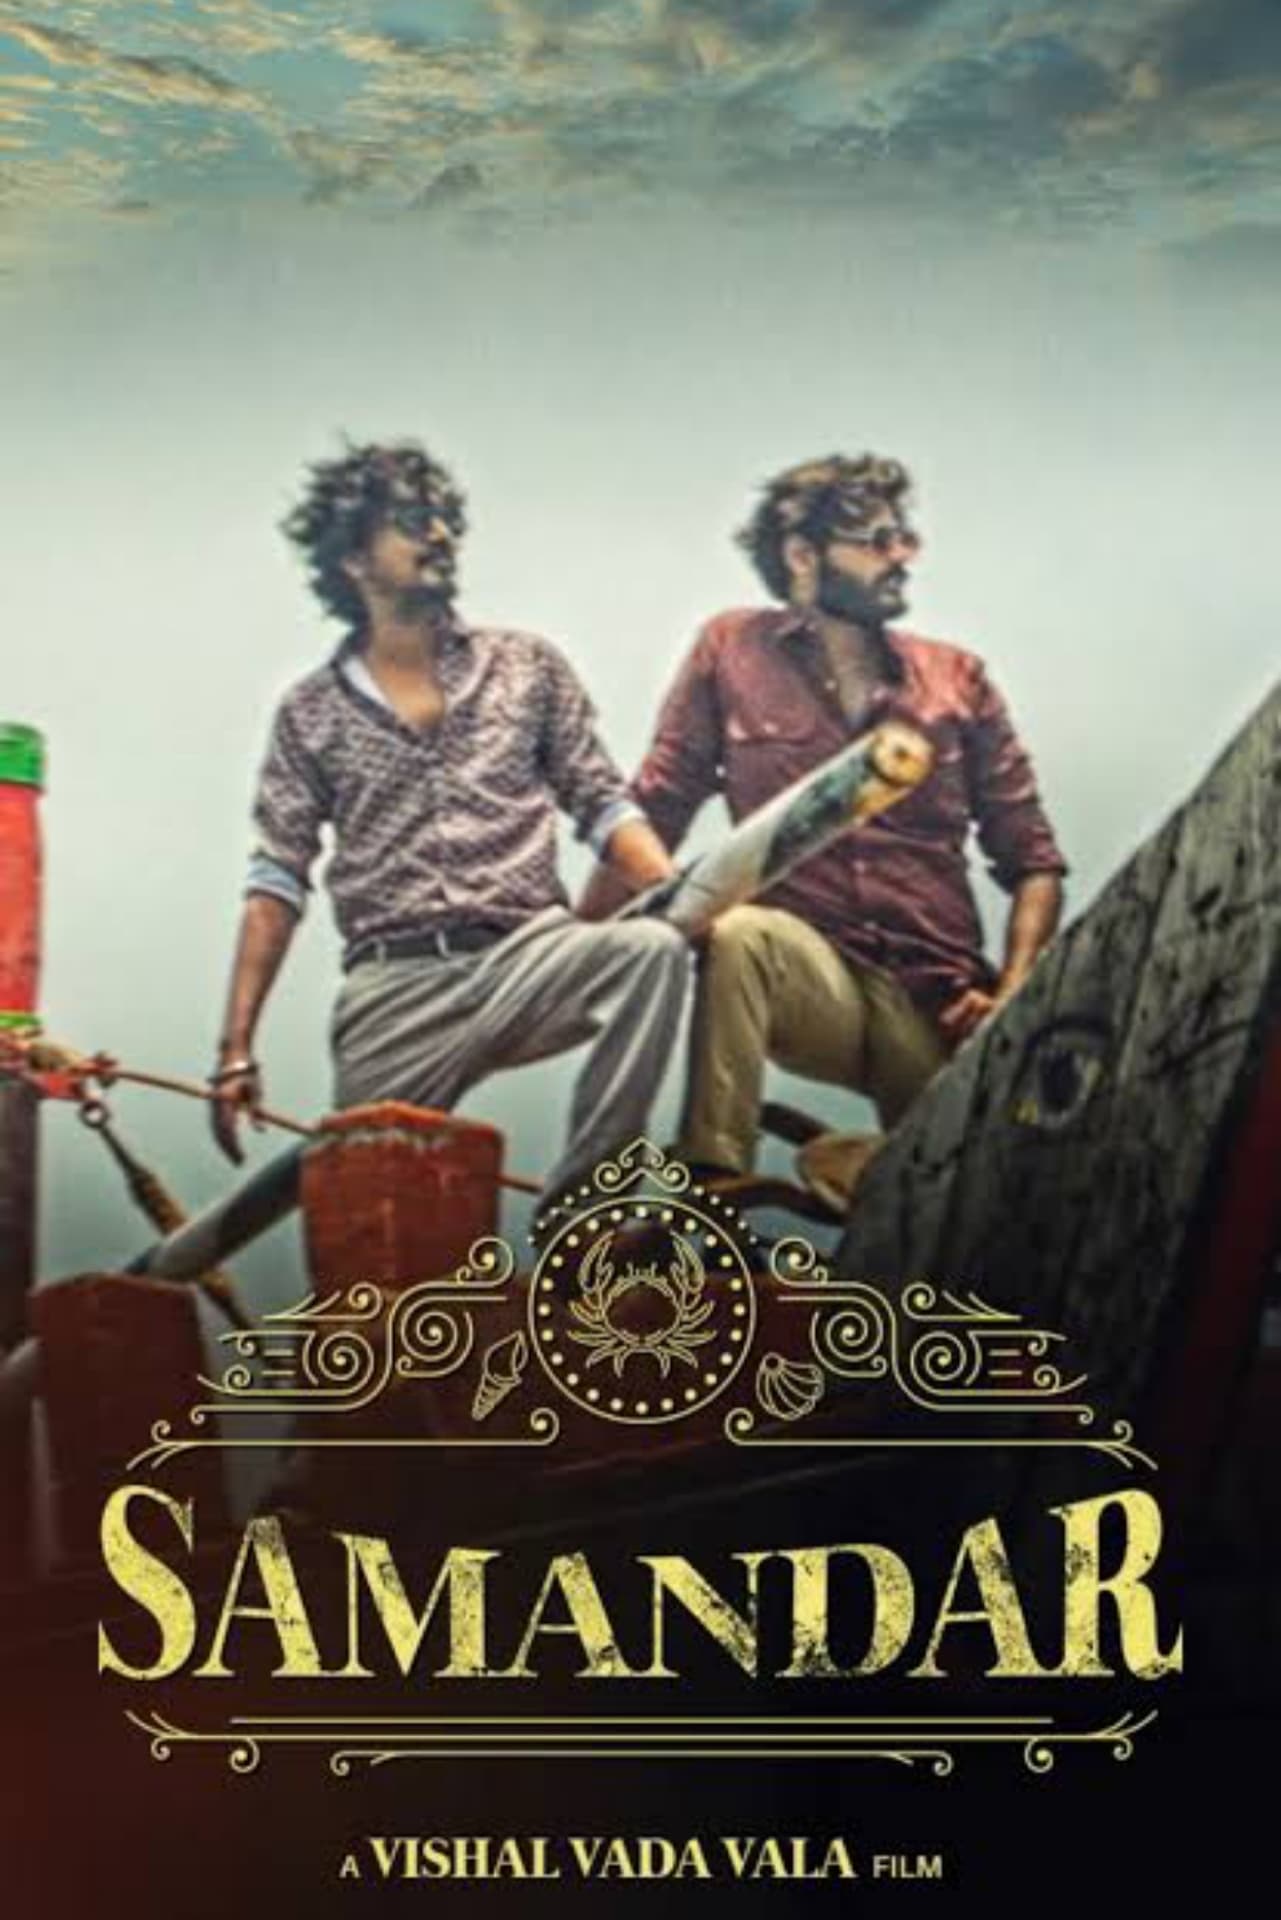 Poster for the movie "Samandar"